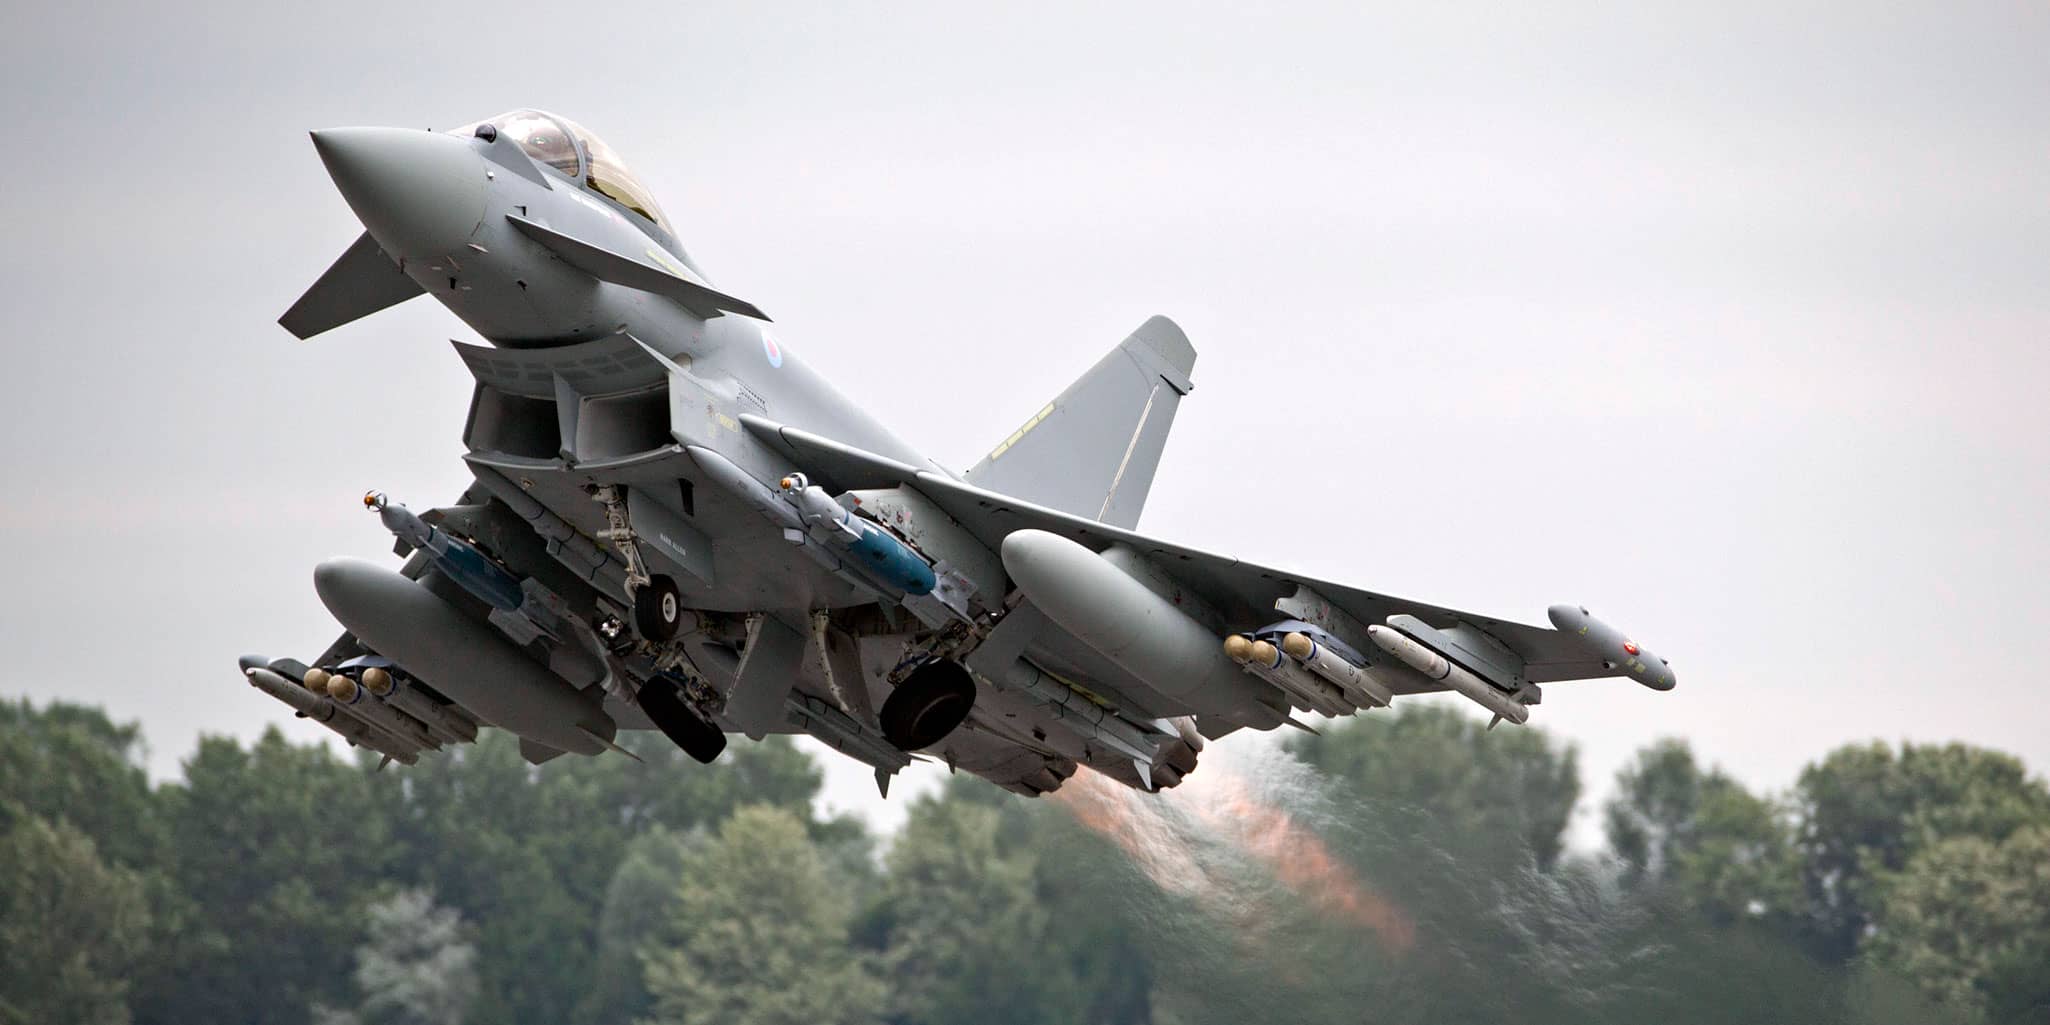 İngiltere'den Türkiye'ye: Eurofighter Typhoon satışına hazırız